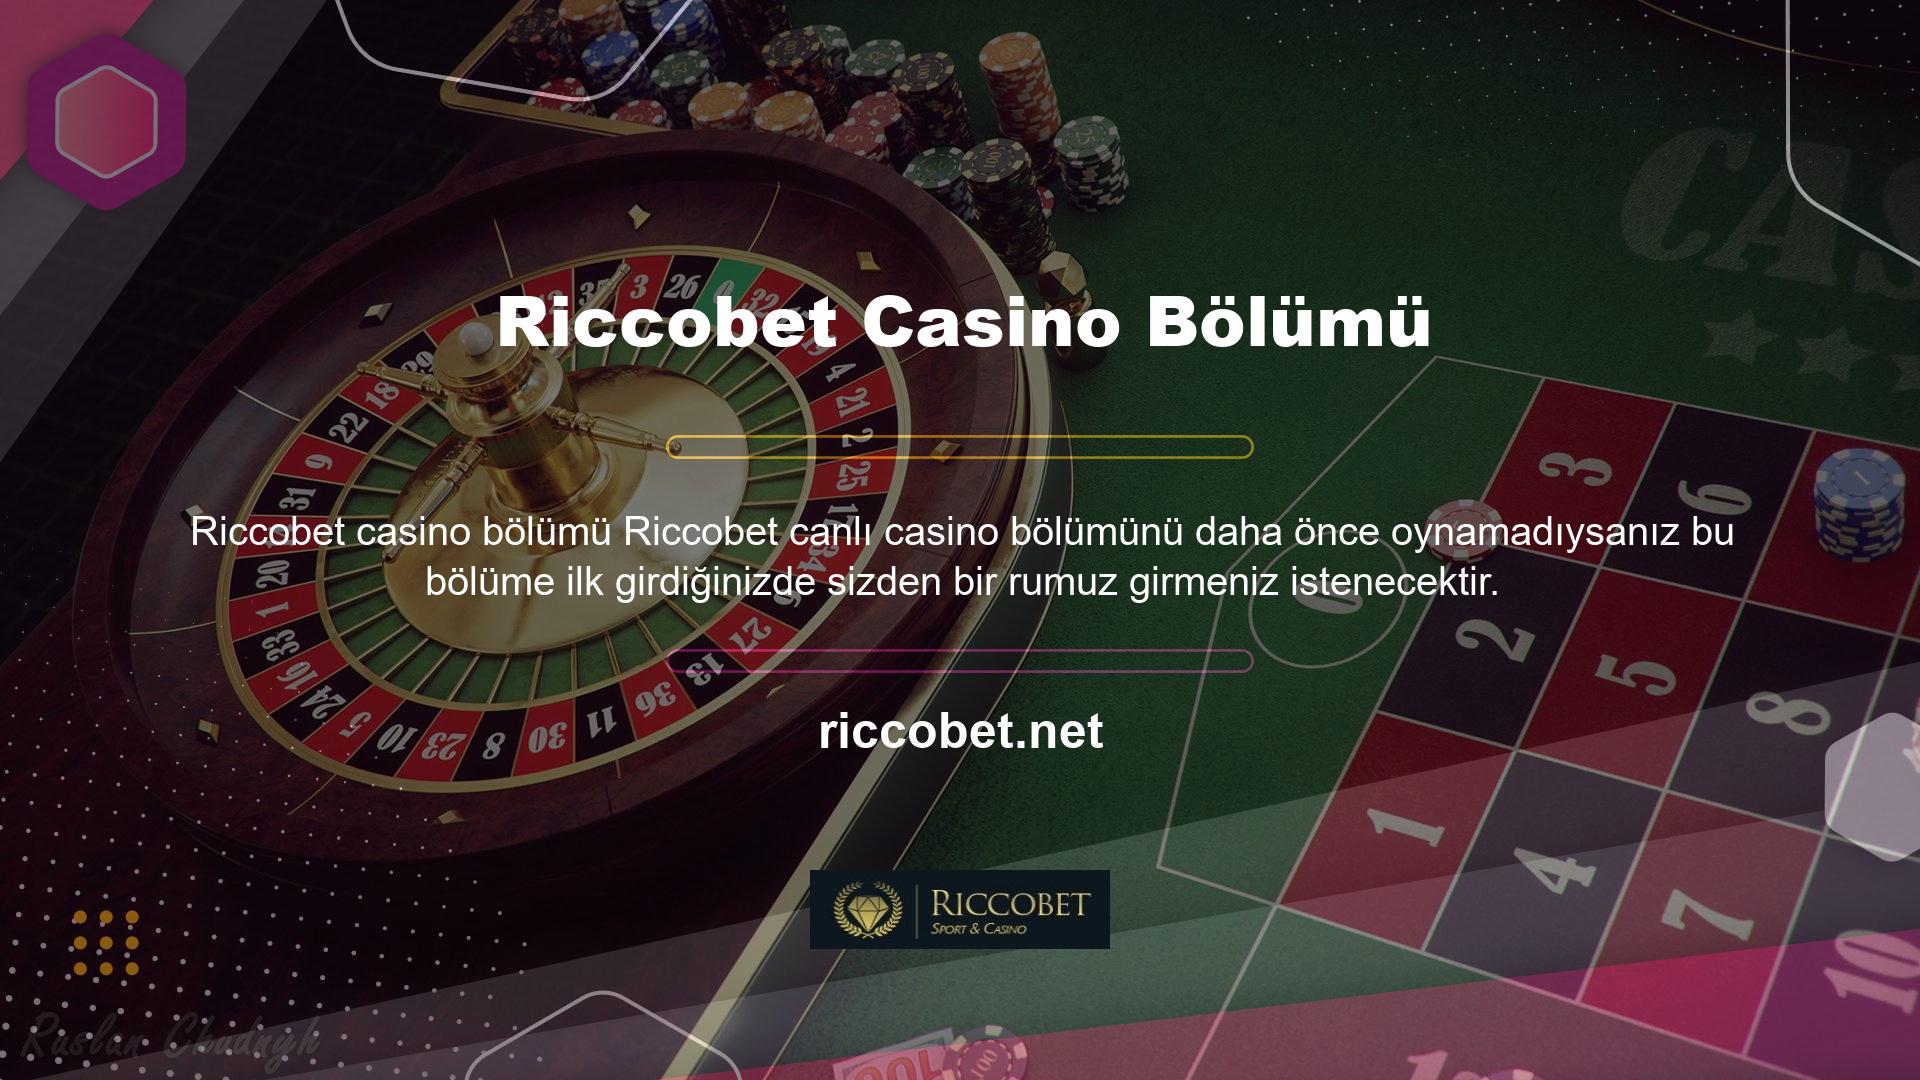 Riccobet canlı casinoda belirlenen takma ad değişmeyecektir